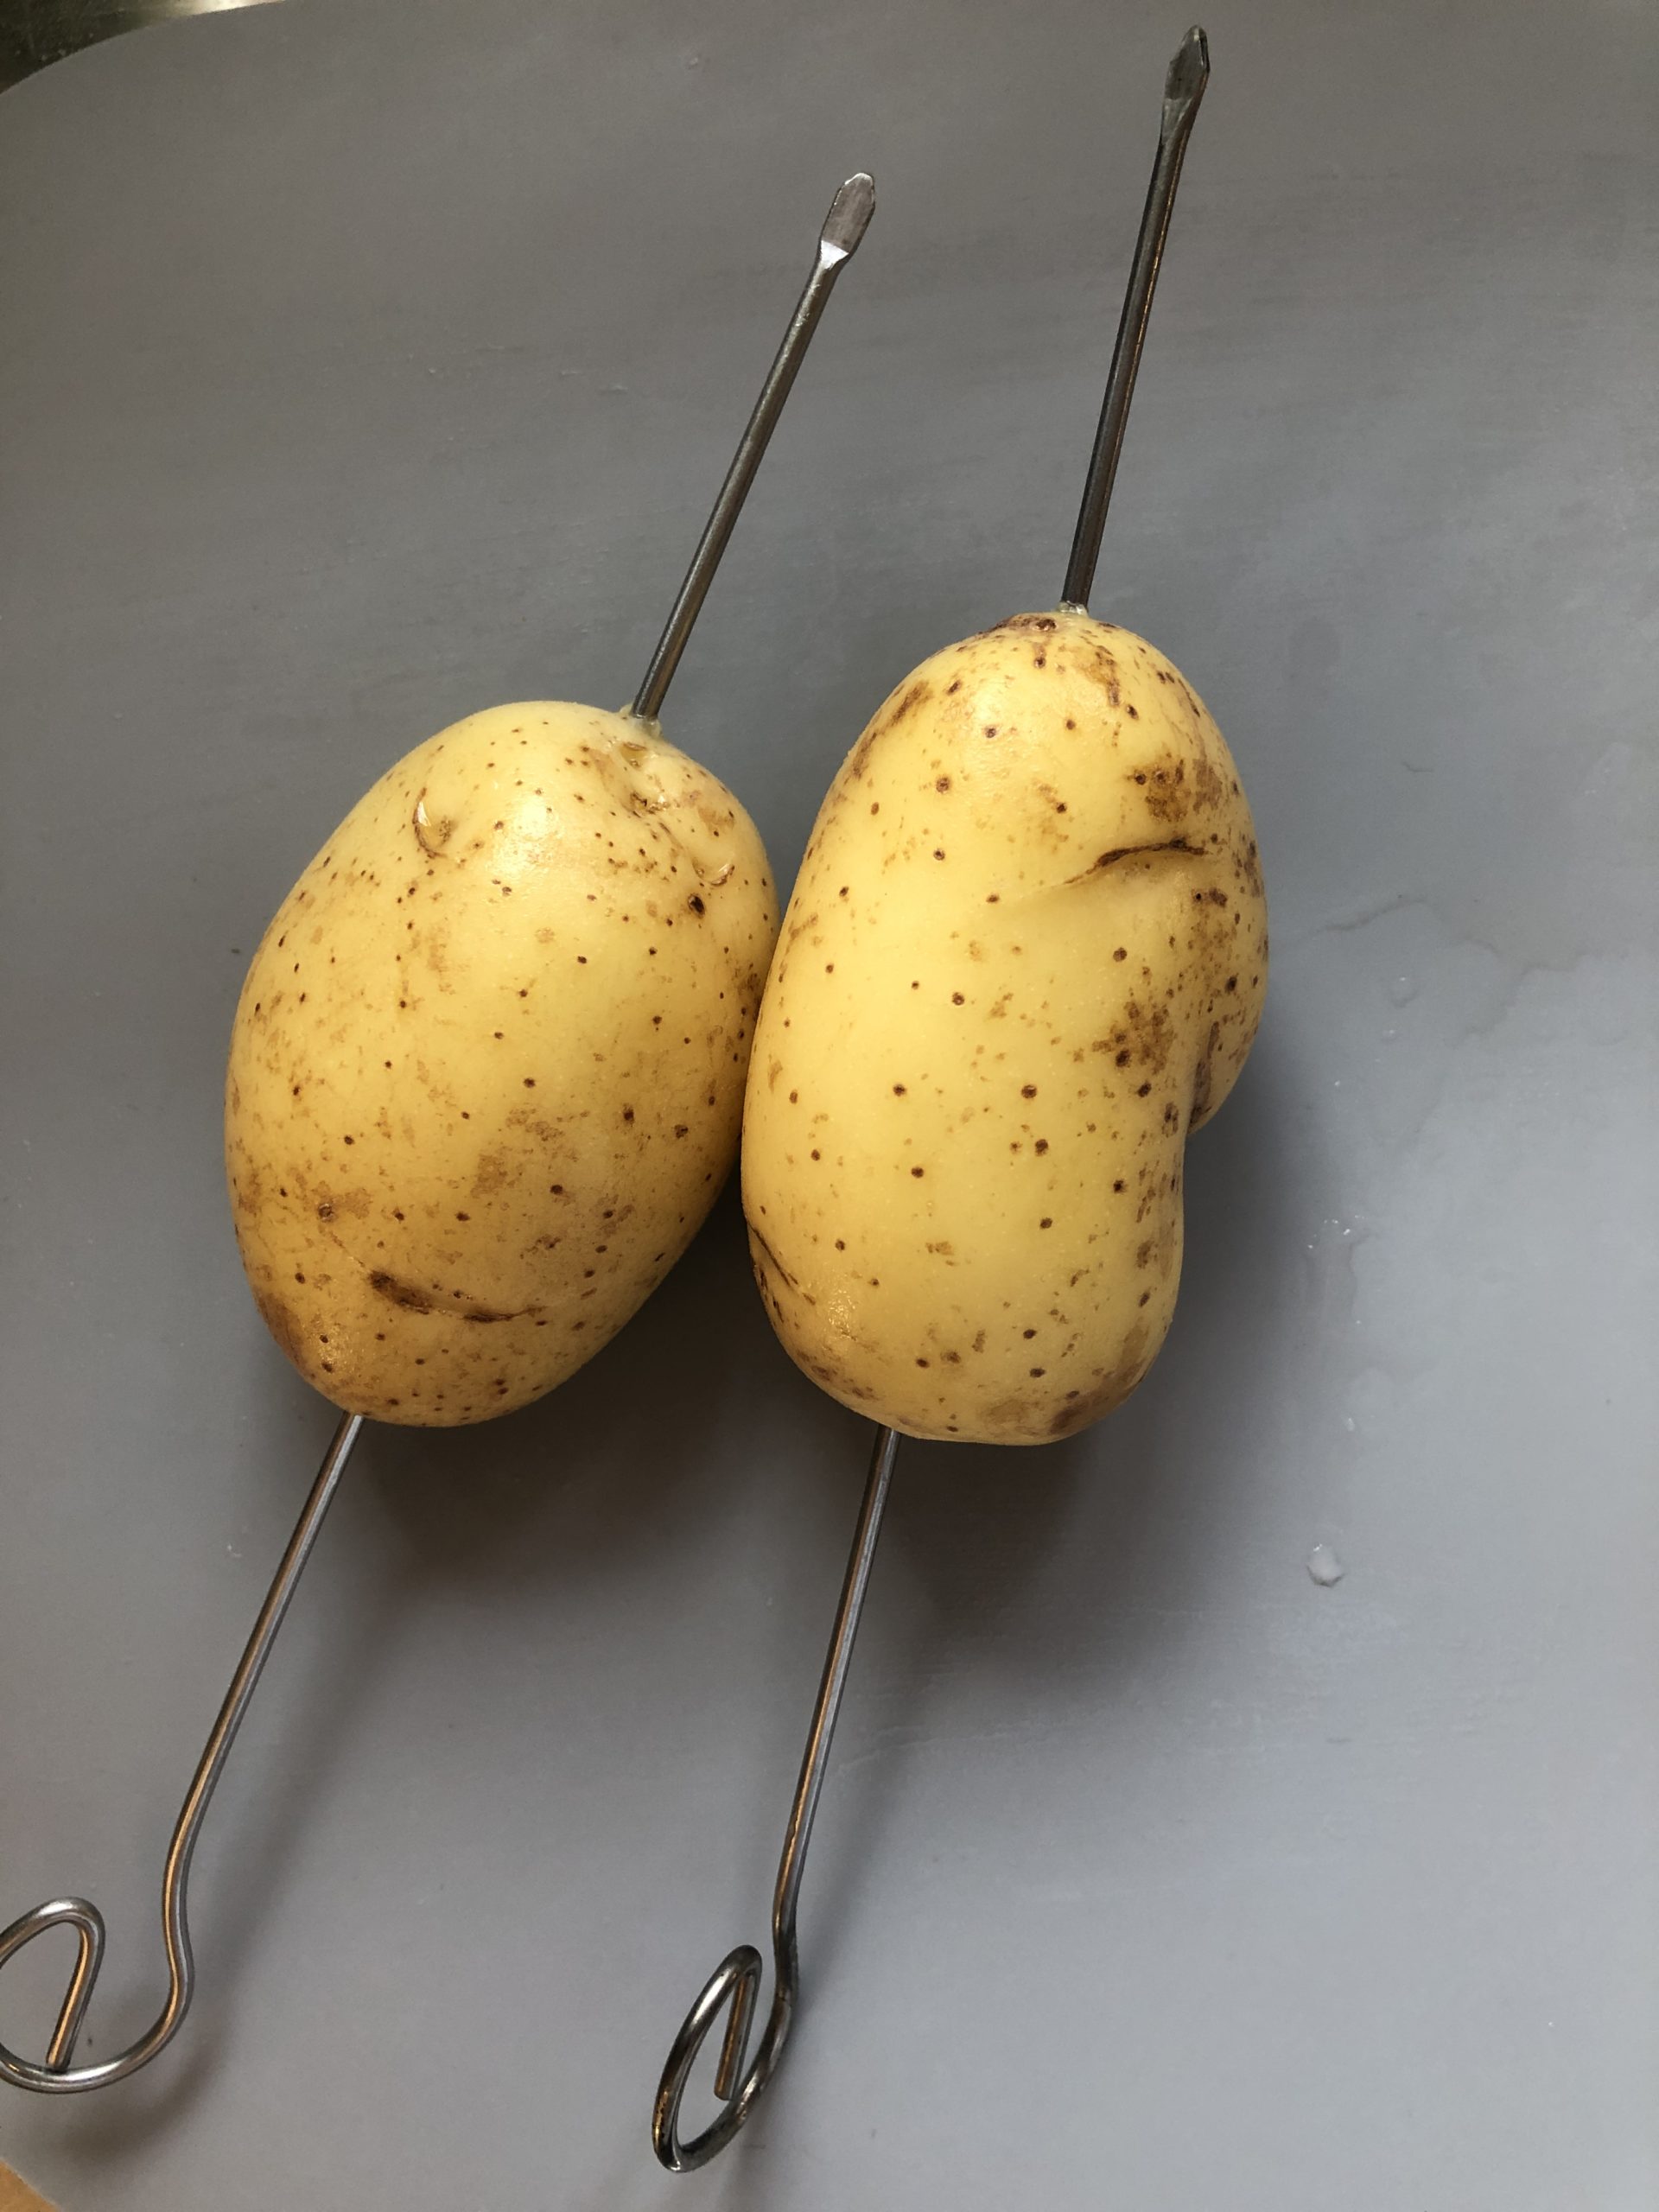 Bild zum Schritt 2 für die Kinder-Beschäftigung: 'Durch jede Kartoffel der Länge nach einen Spieß stecken.'